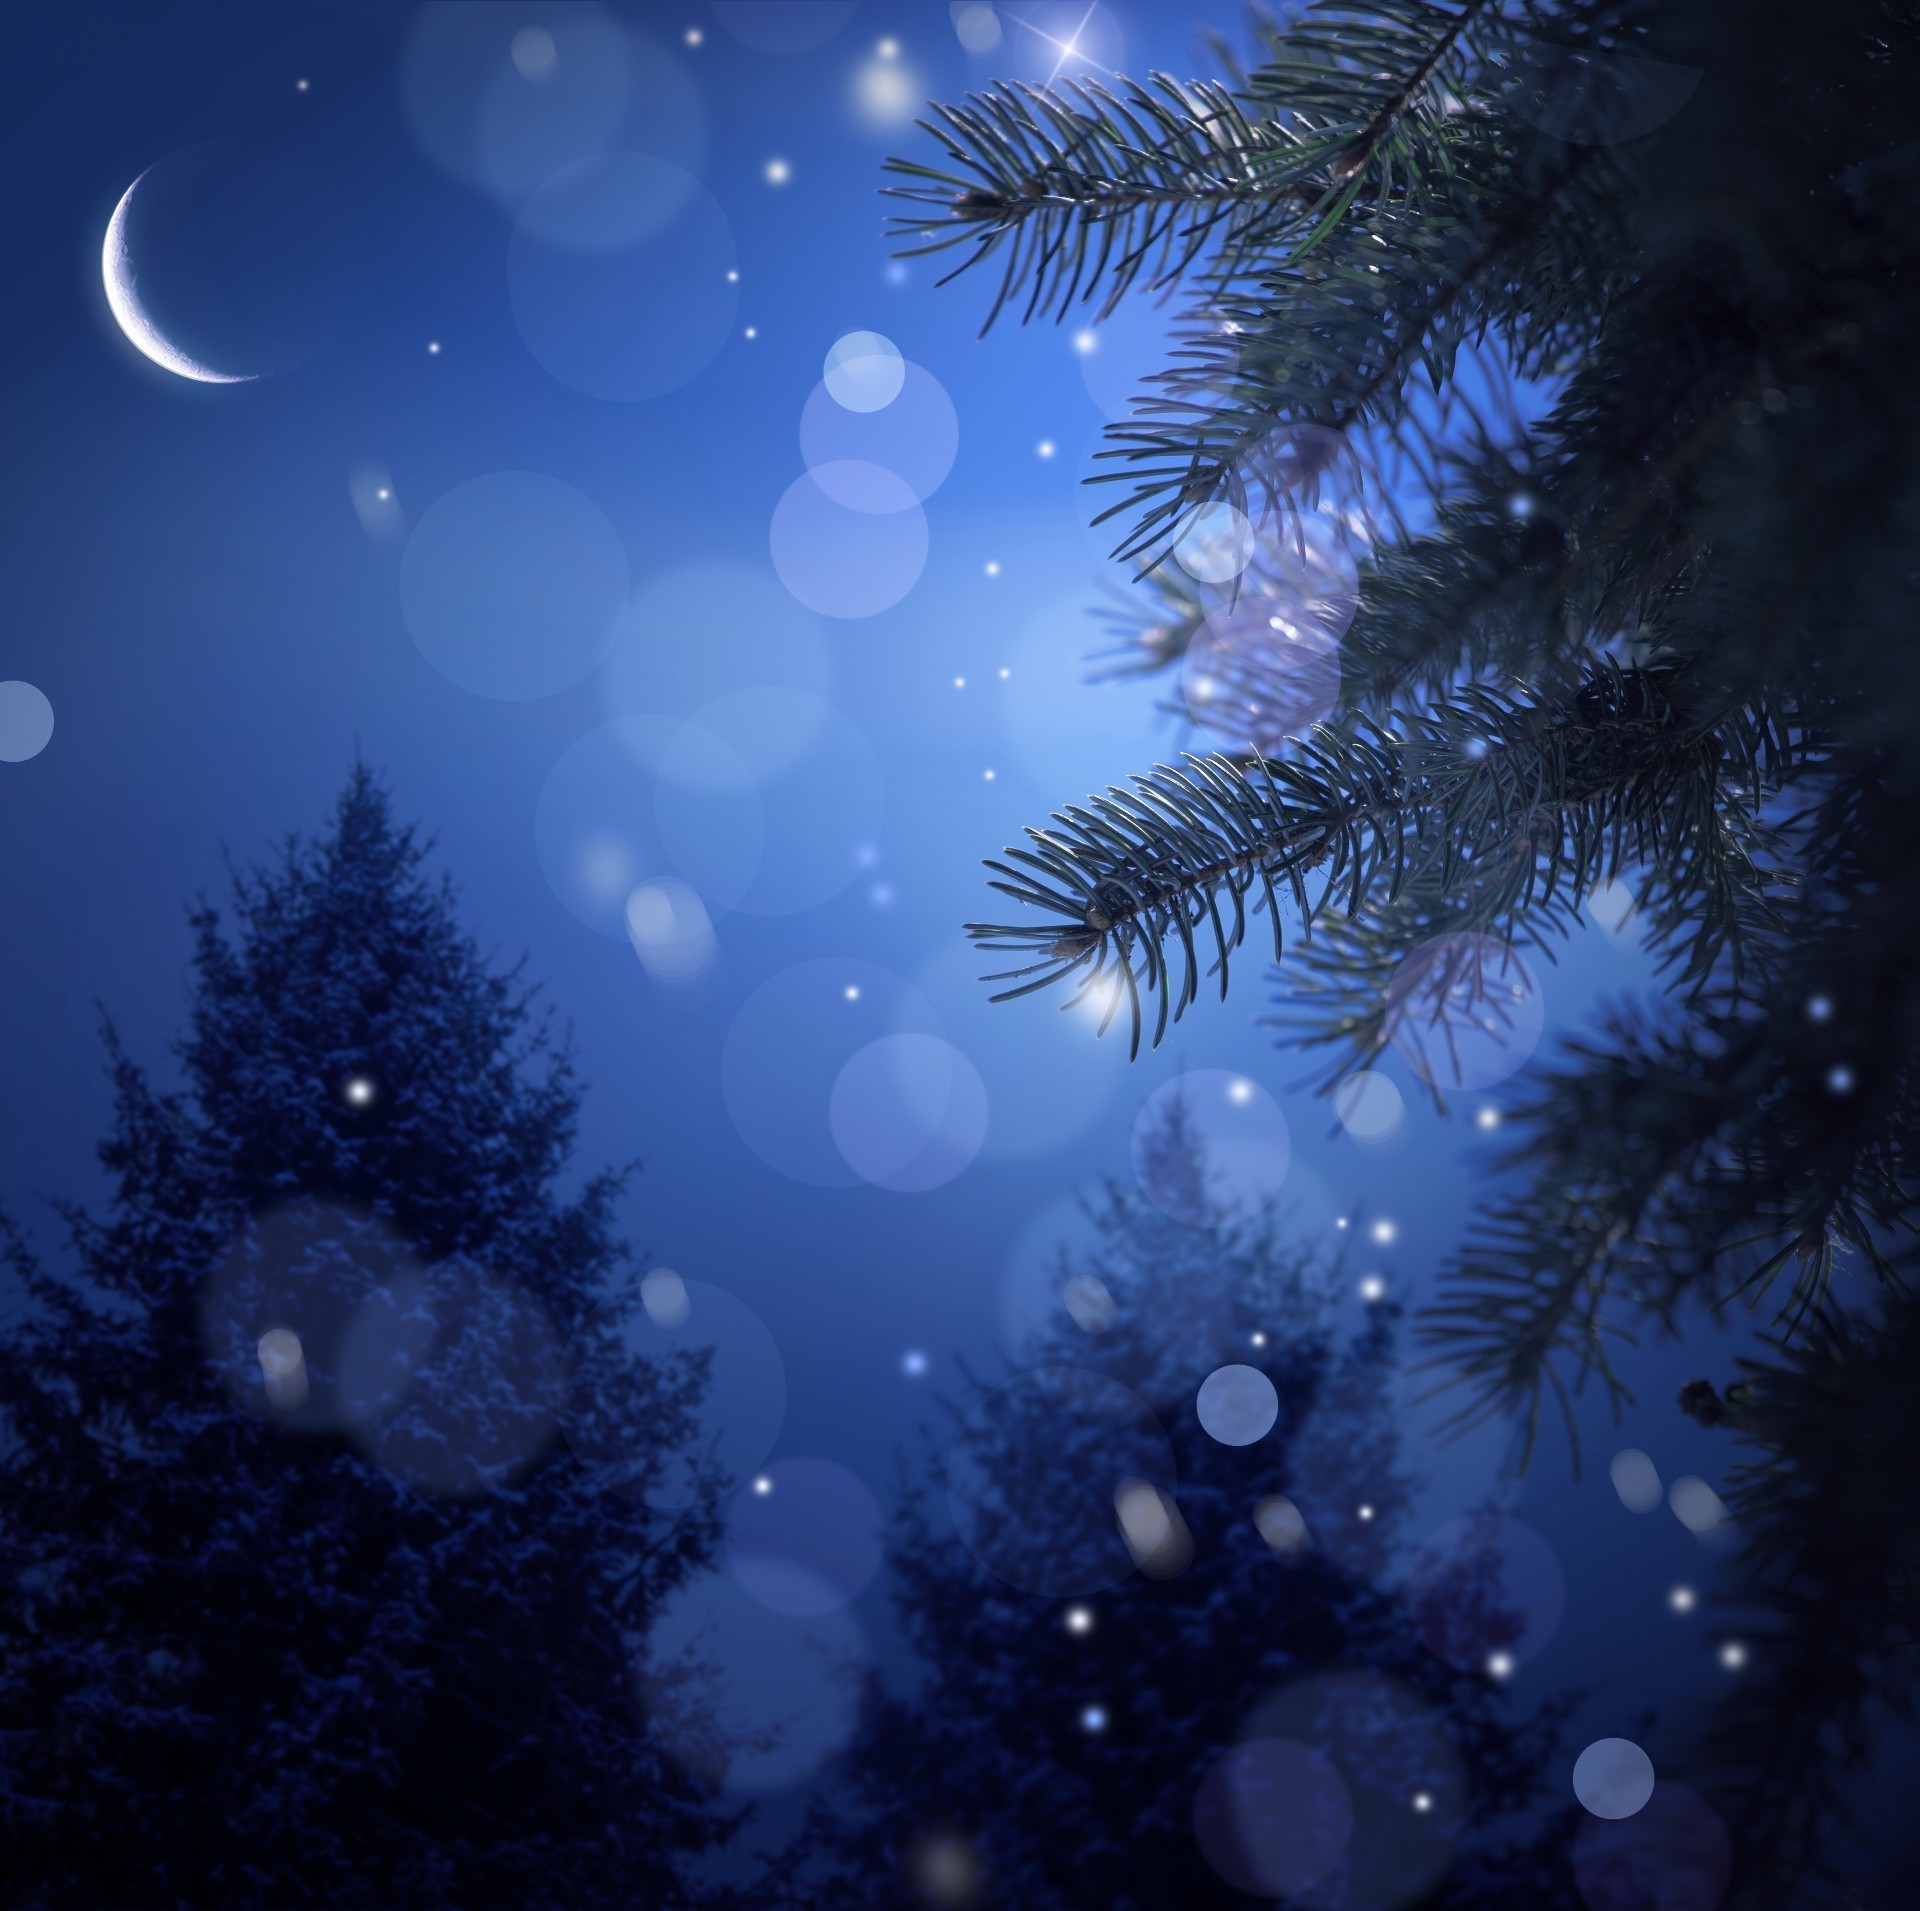 пейзажи зима рождество рабочего стола свет цвет снег украшения аннотация дерево светит праздник снежинка яркий природа блестят карта новый год мерри